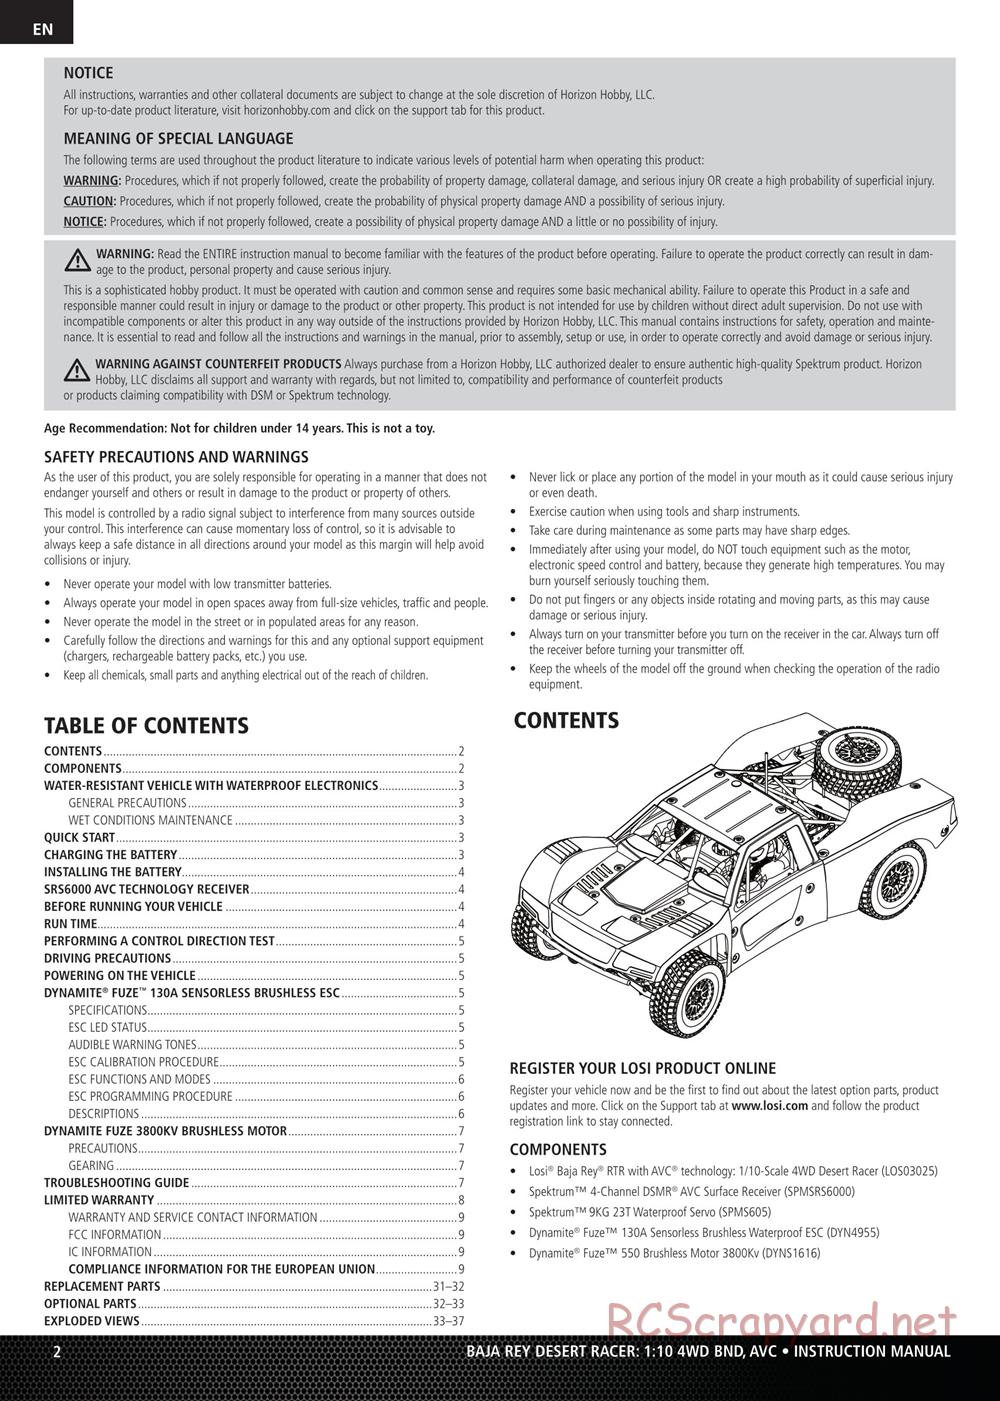 Team Losi - Baja Rey BND - Manual - Page 2